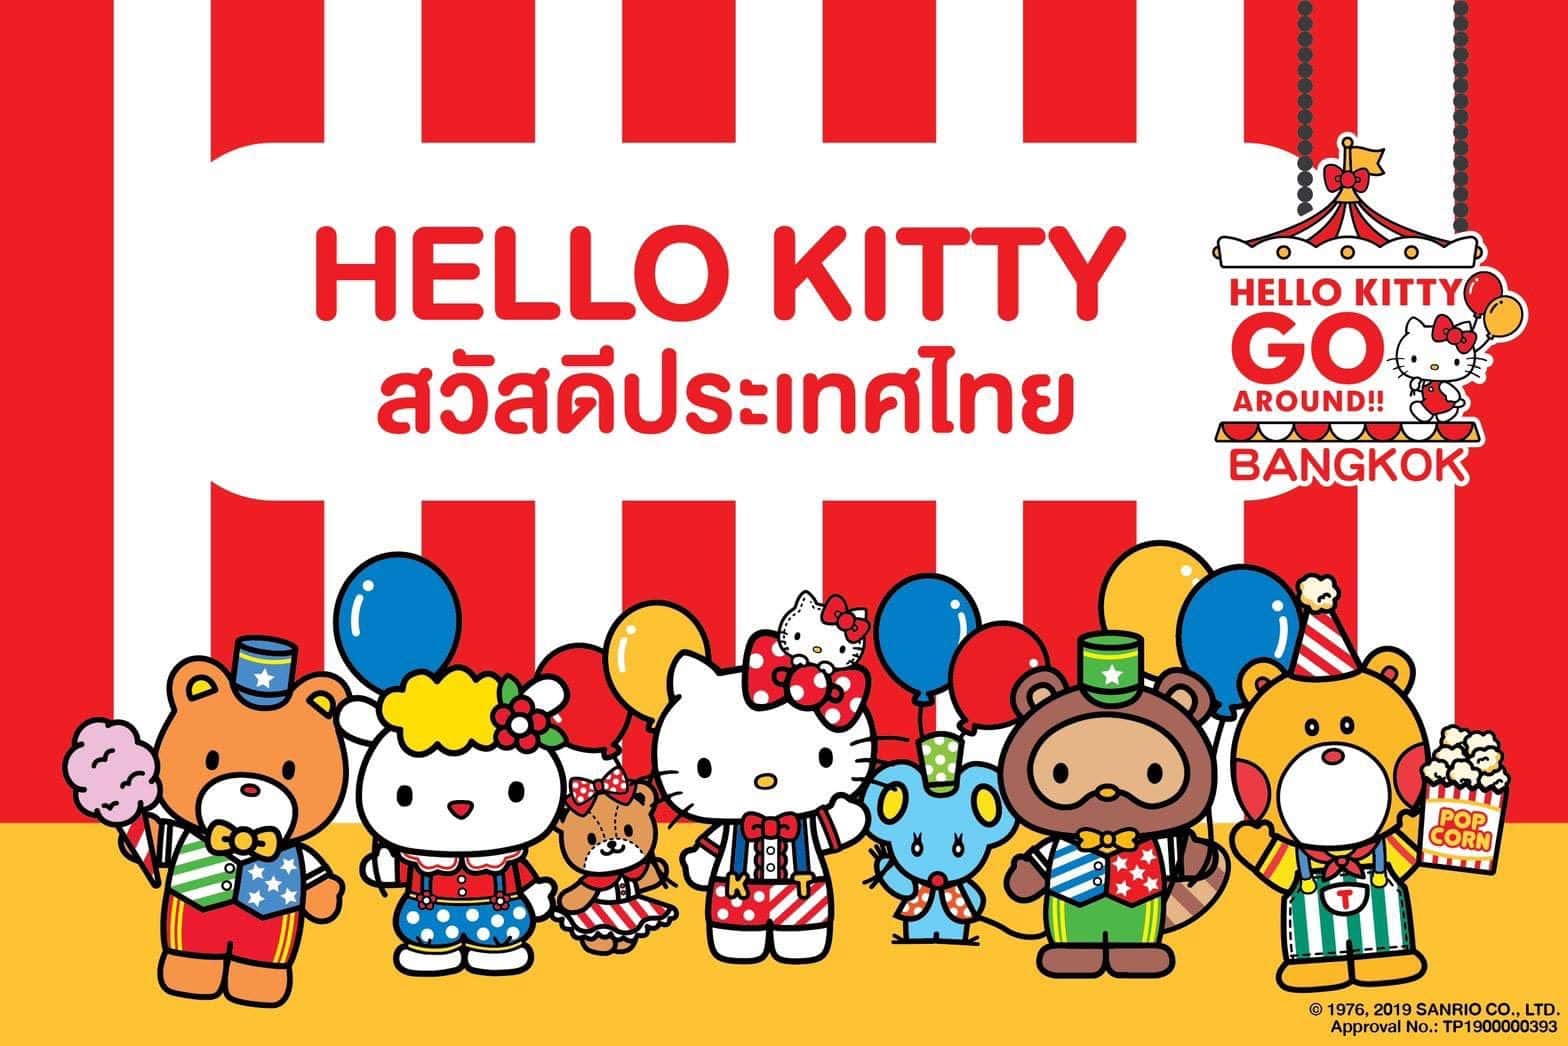 ็Hello Kitty Go Around Bangkok